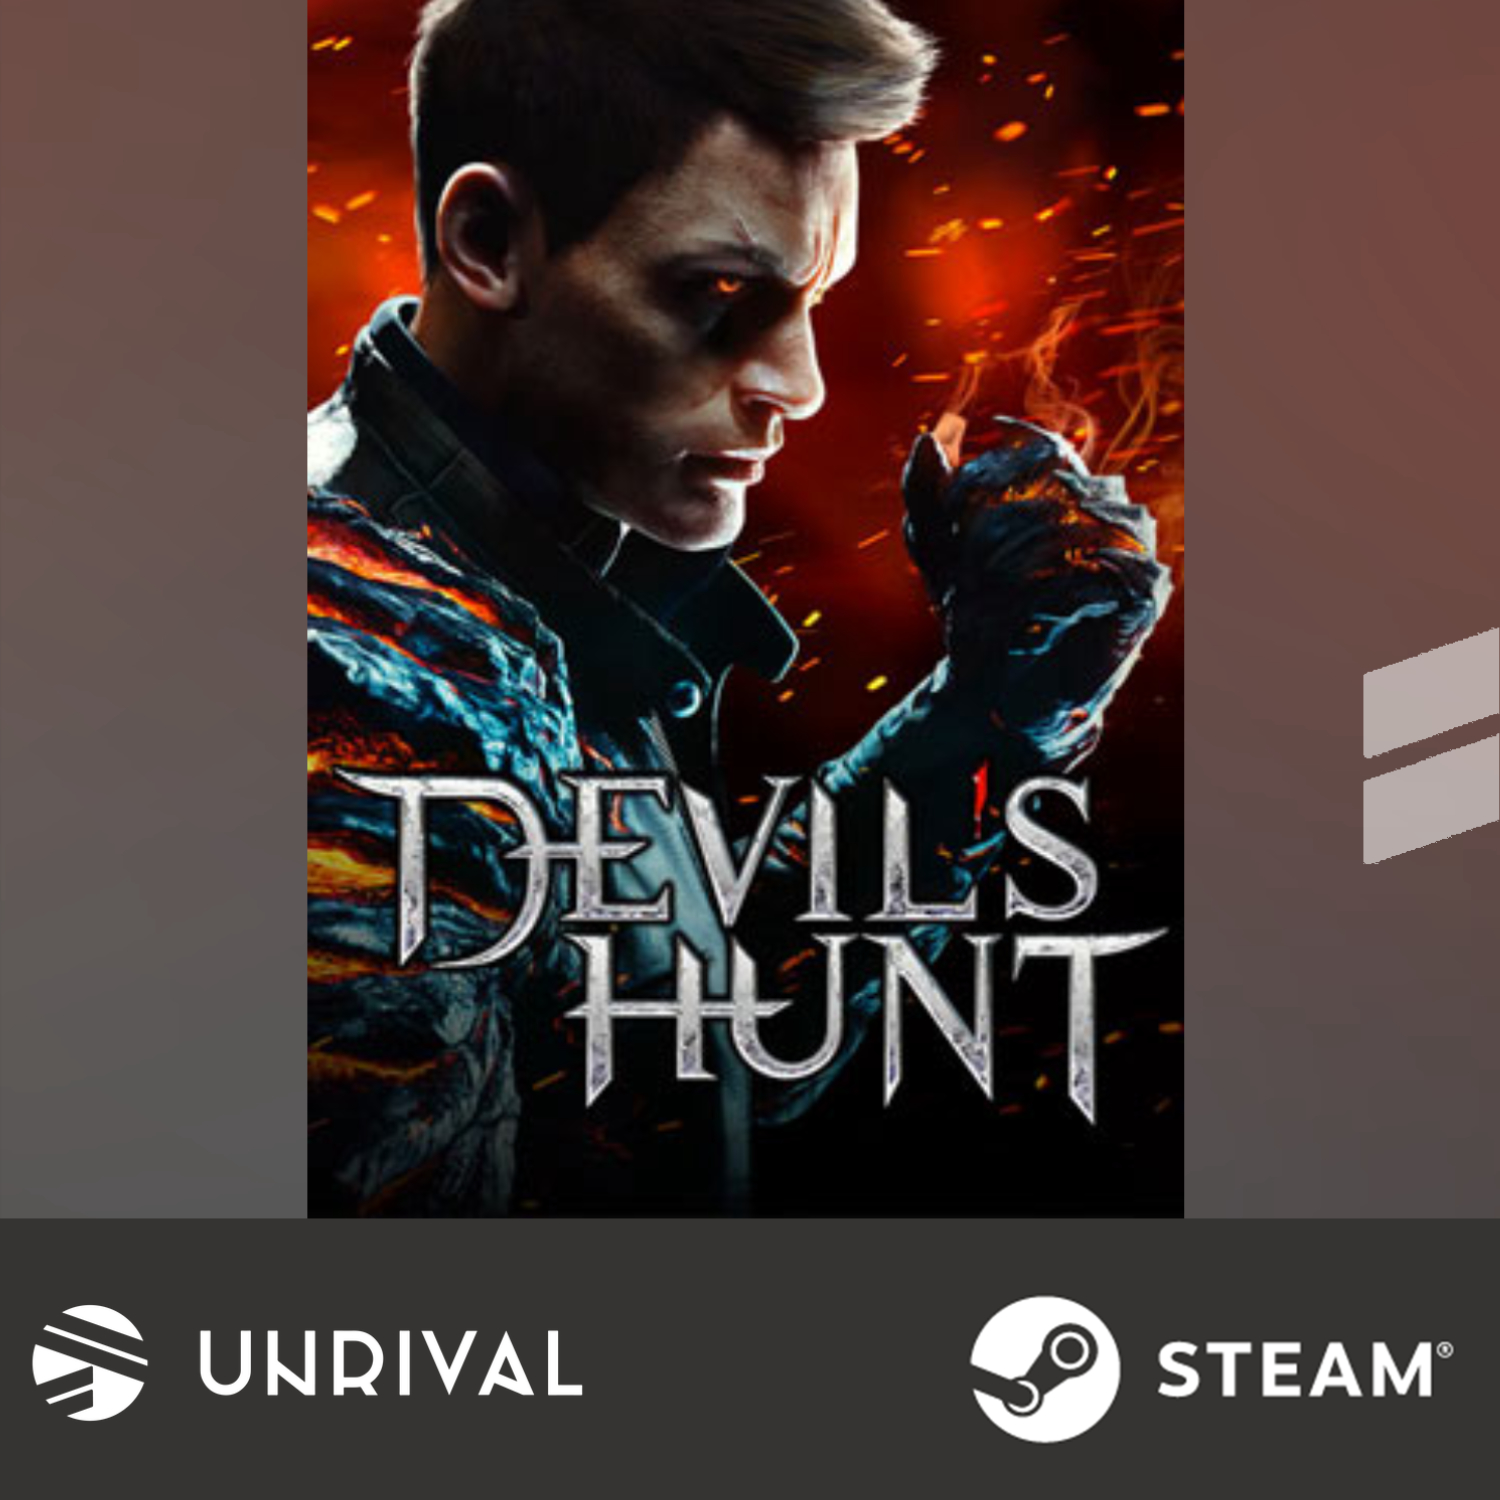 Devil's hunt PC Digital Download Game - Unrival